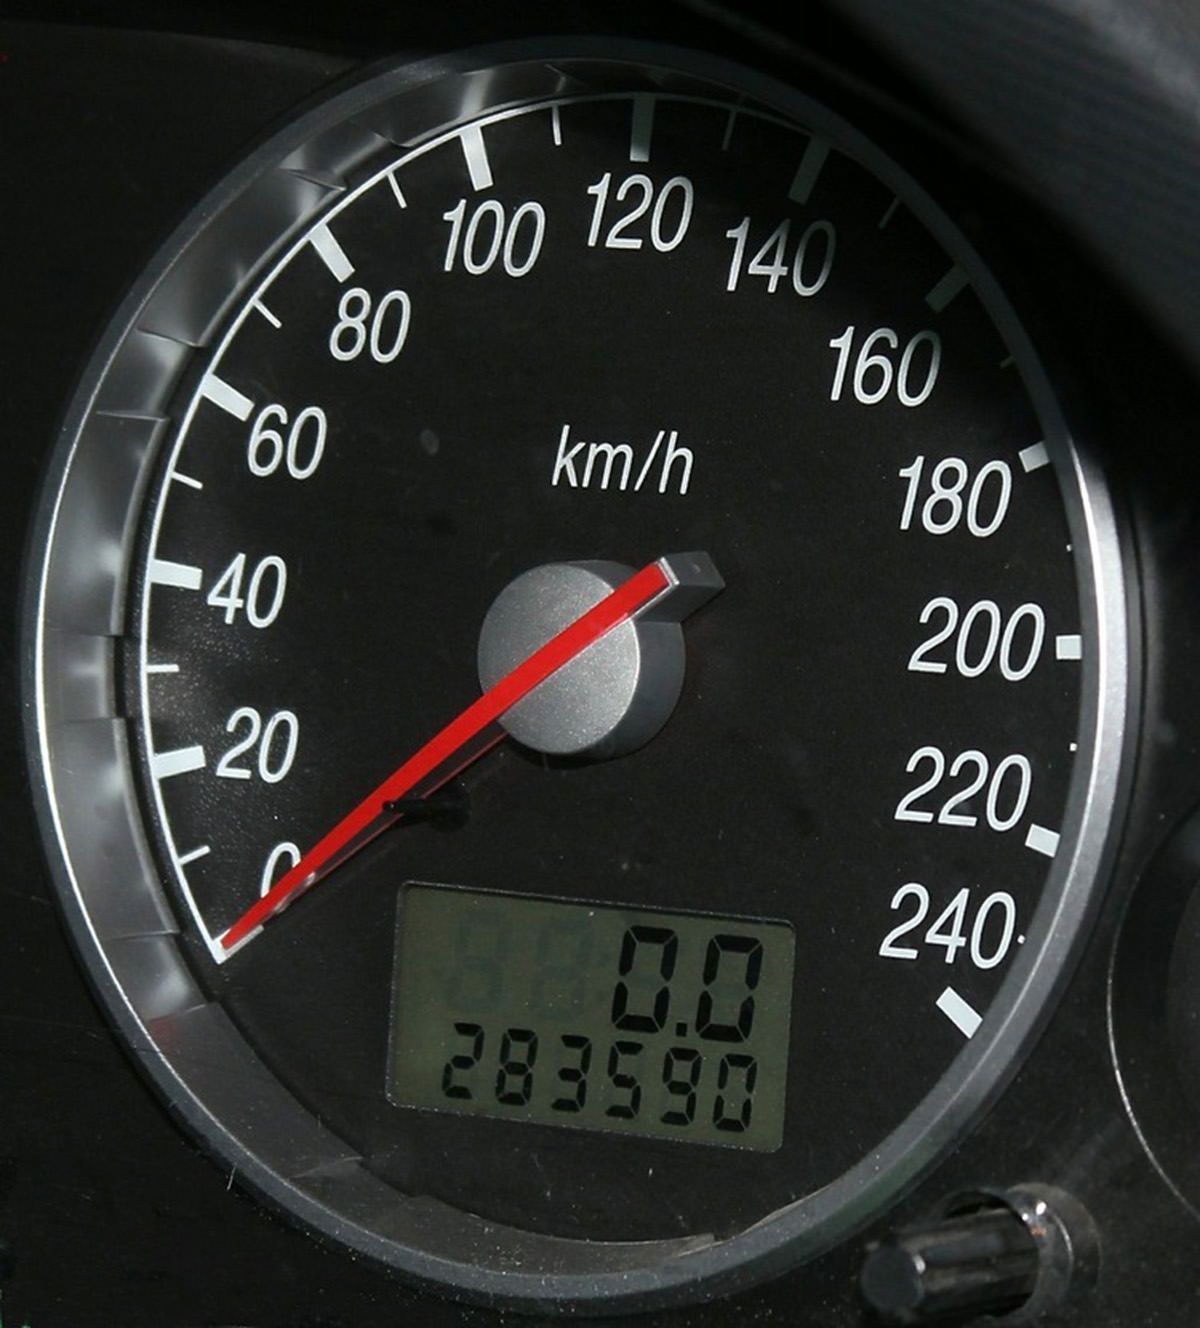 Speedometer or vehicle odometer